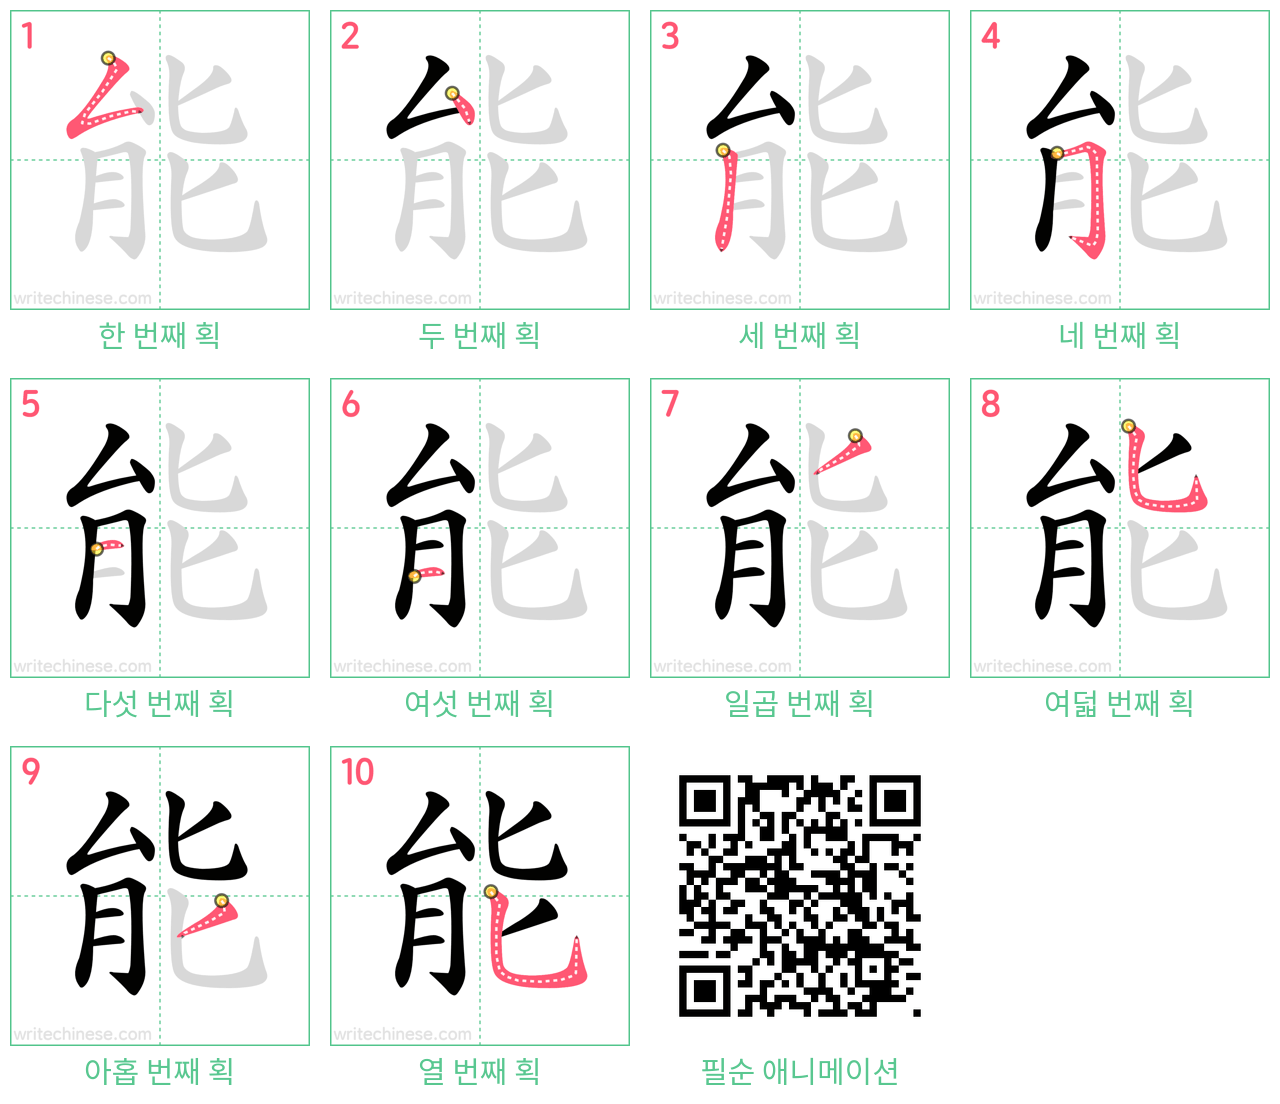 能 step-by-step stroke order diagrams